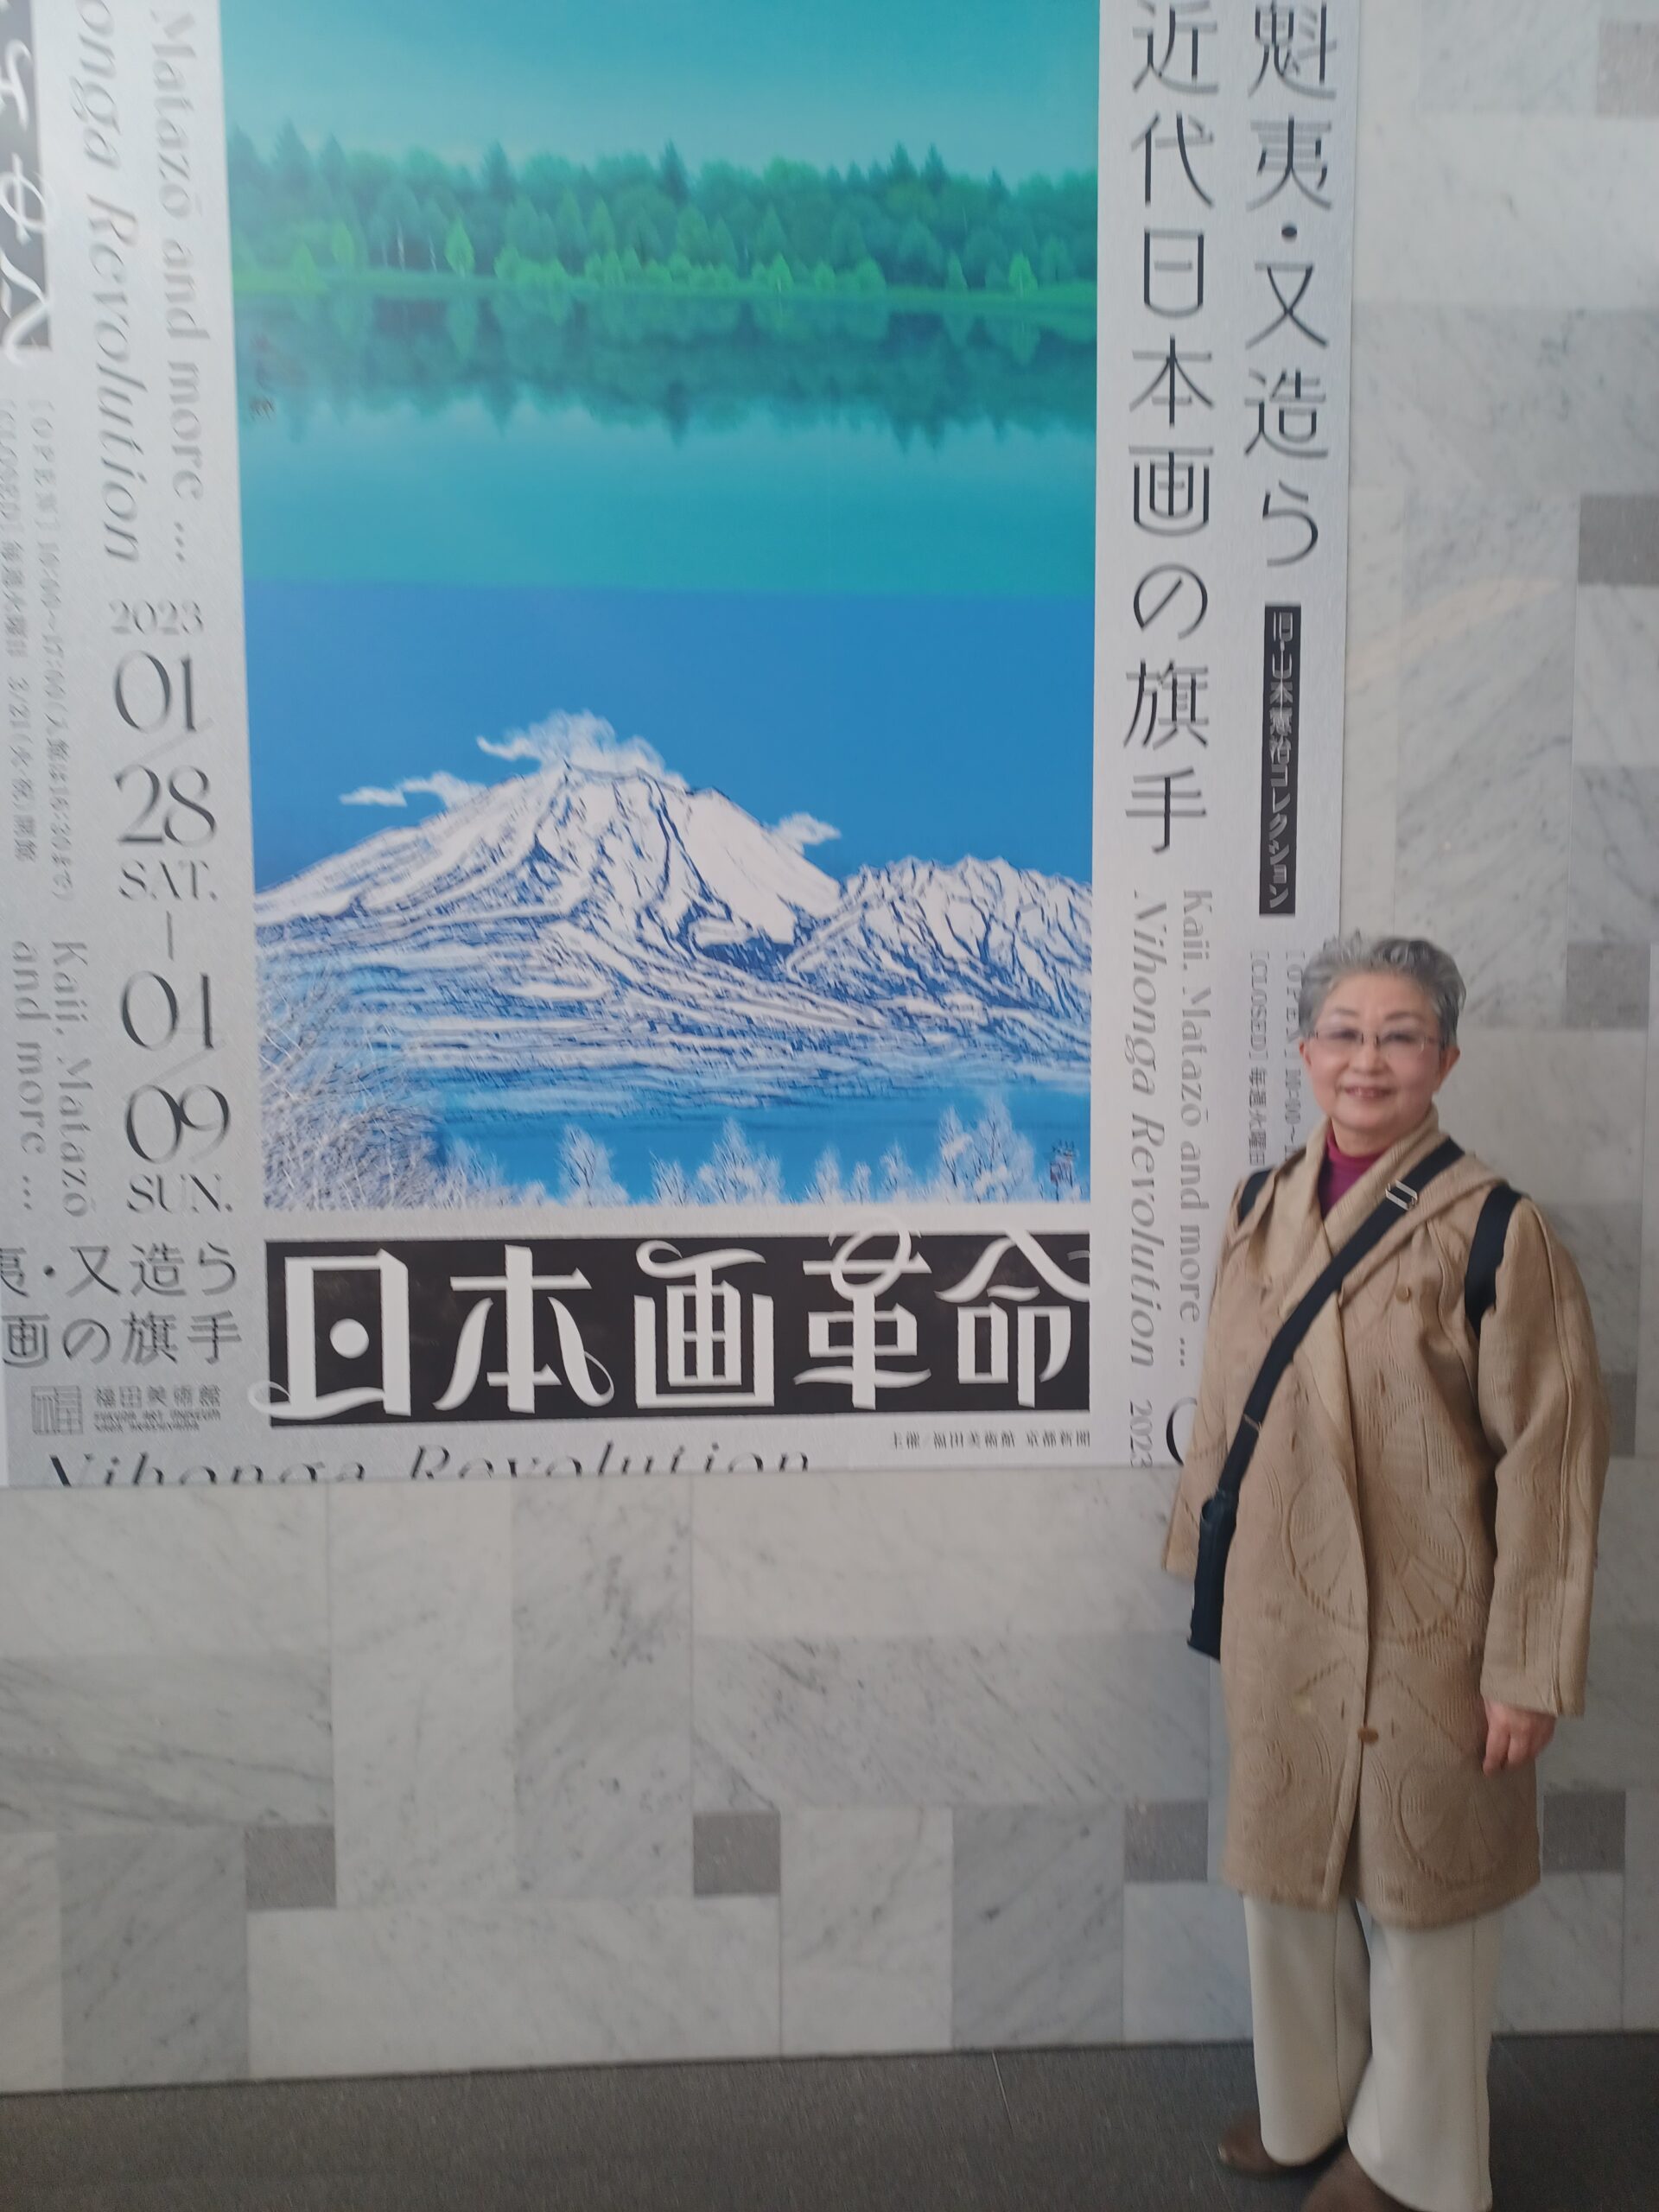 早春🌸の嵐山散策🌿と福田美術館にて日本画を鑑賞しまさした🎨